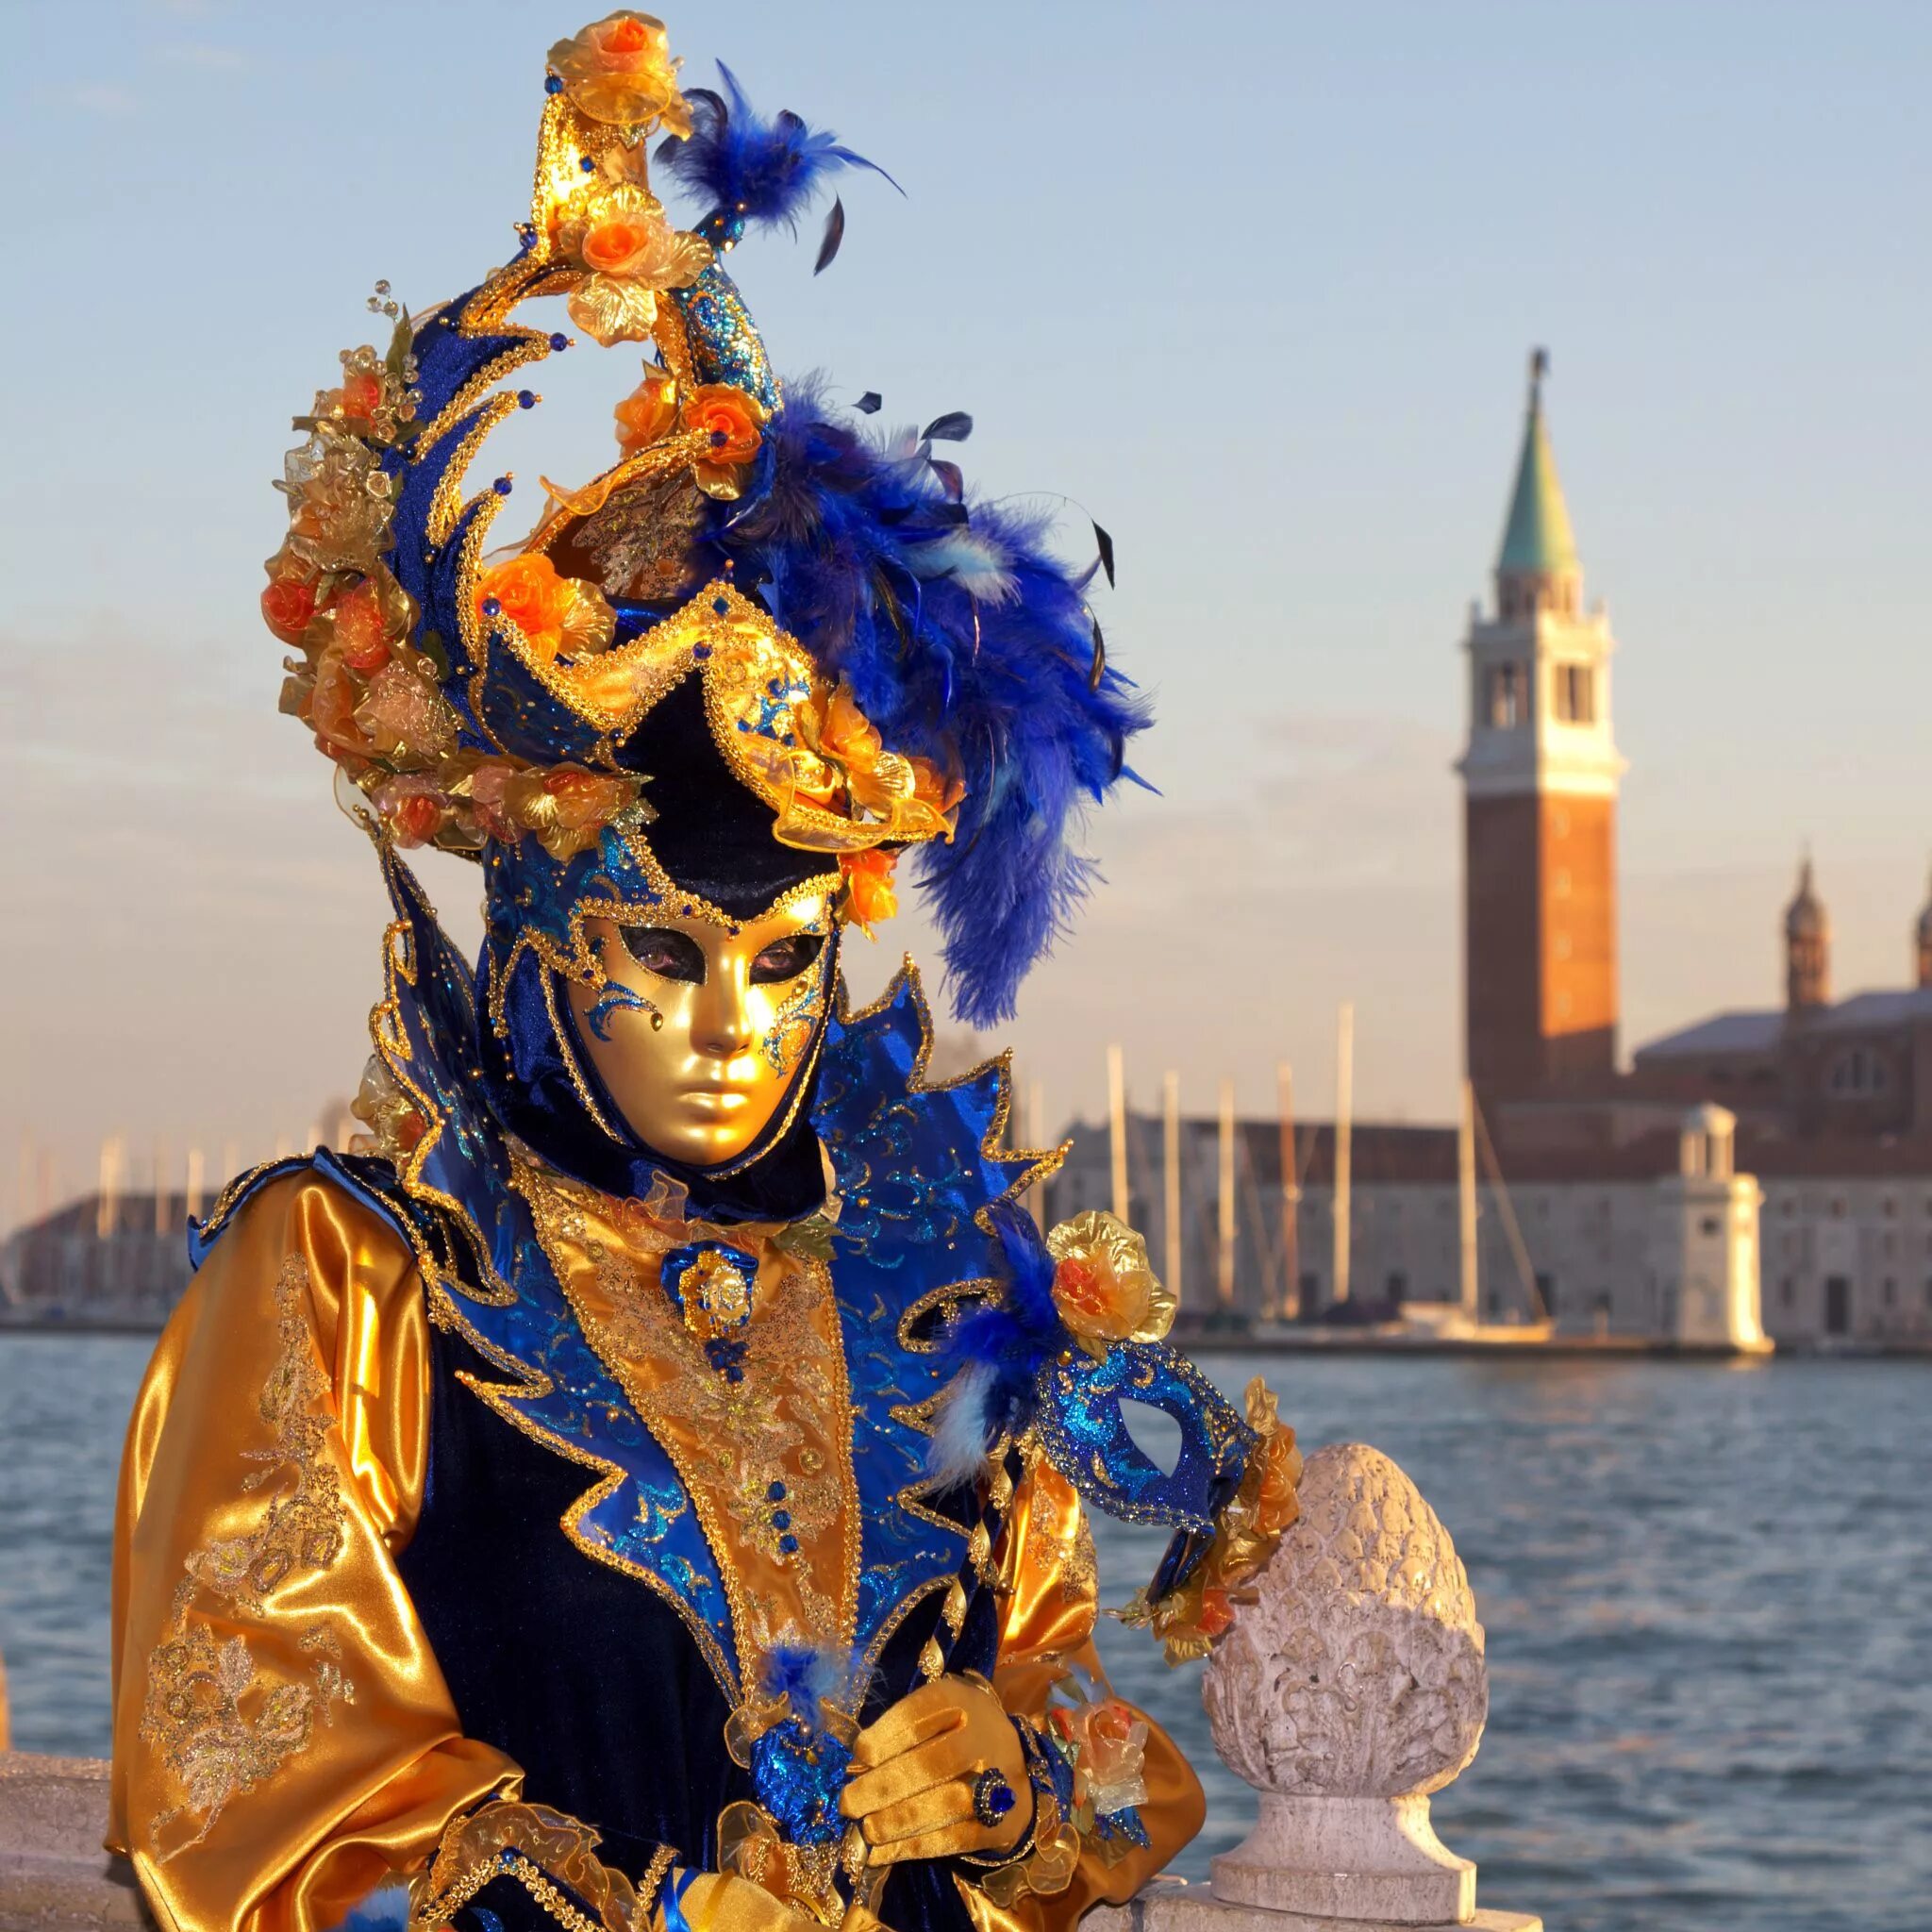 Венецианский карнавал (Carnevale di Venezia) – Италия. Венецианский карнавал Жюль Демерссман. Венецианский карнавал Карло Гольдони. Костюмированный карнавал в Венеции. Карнавальный человек